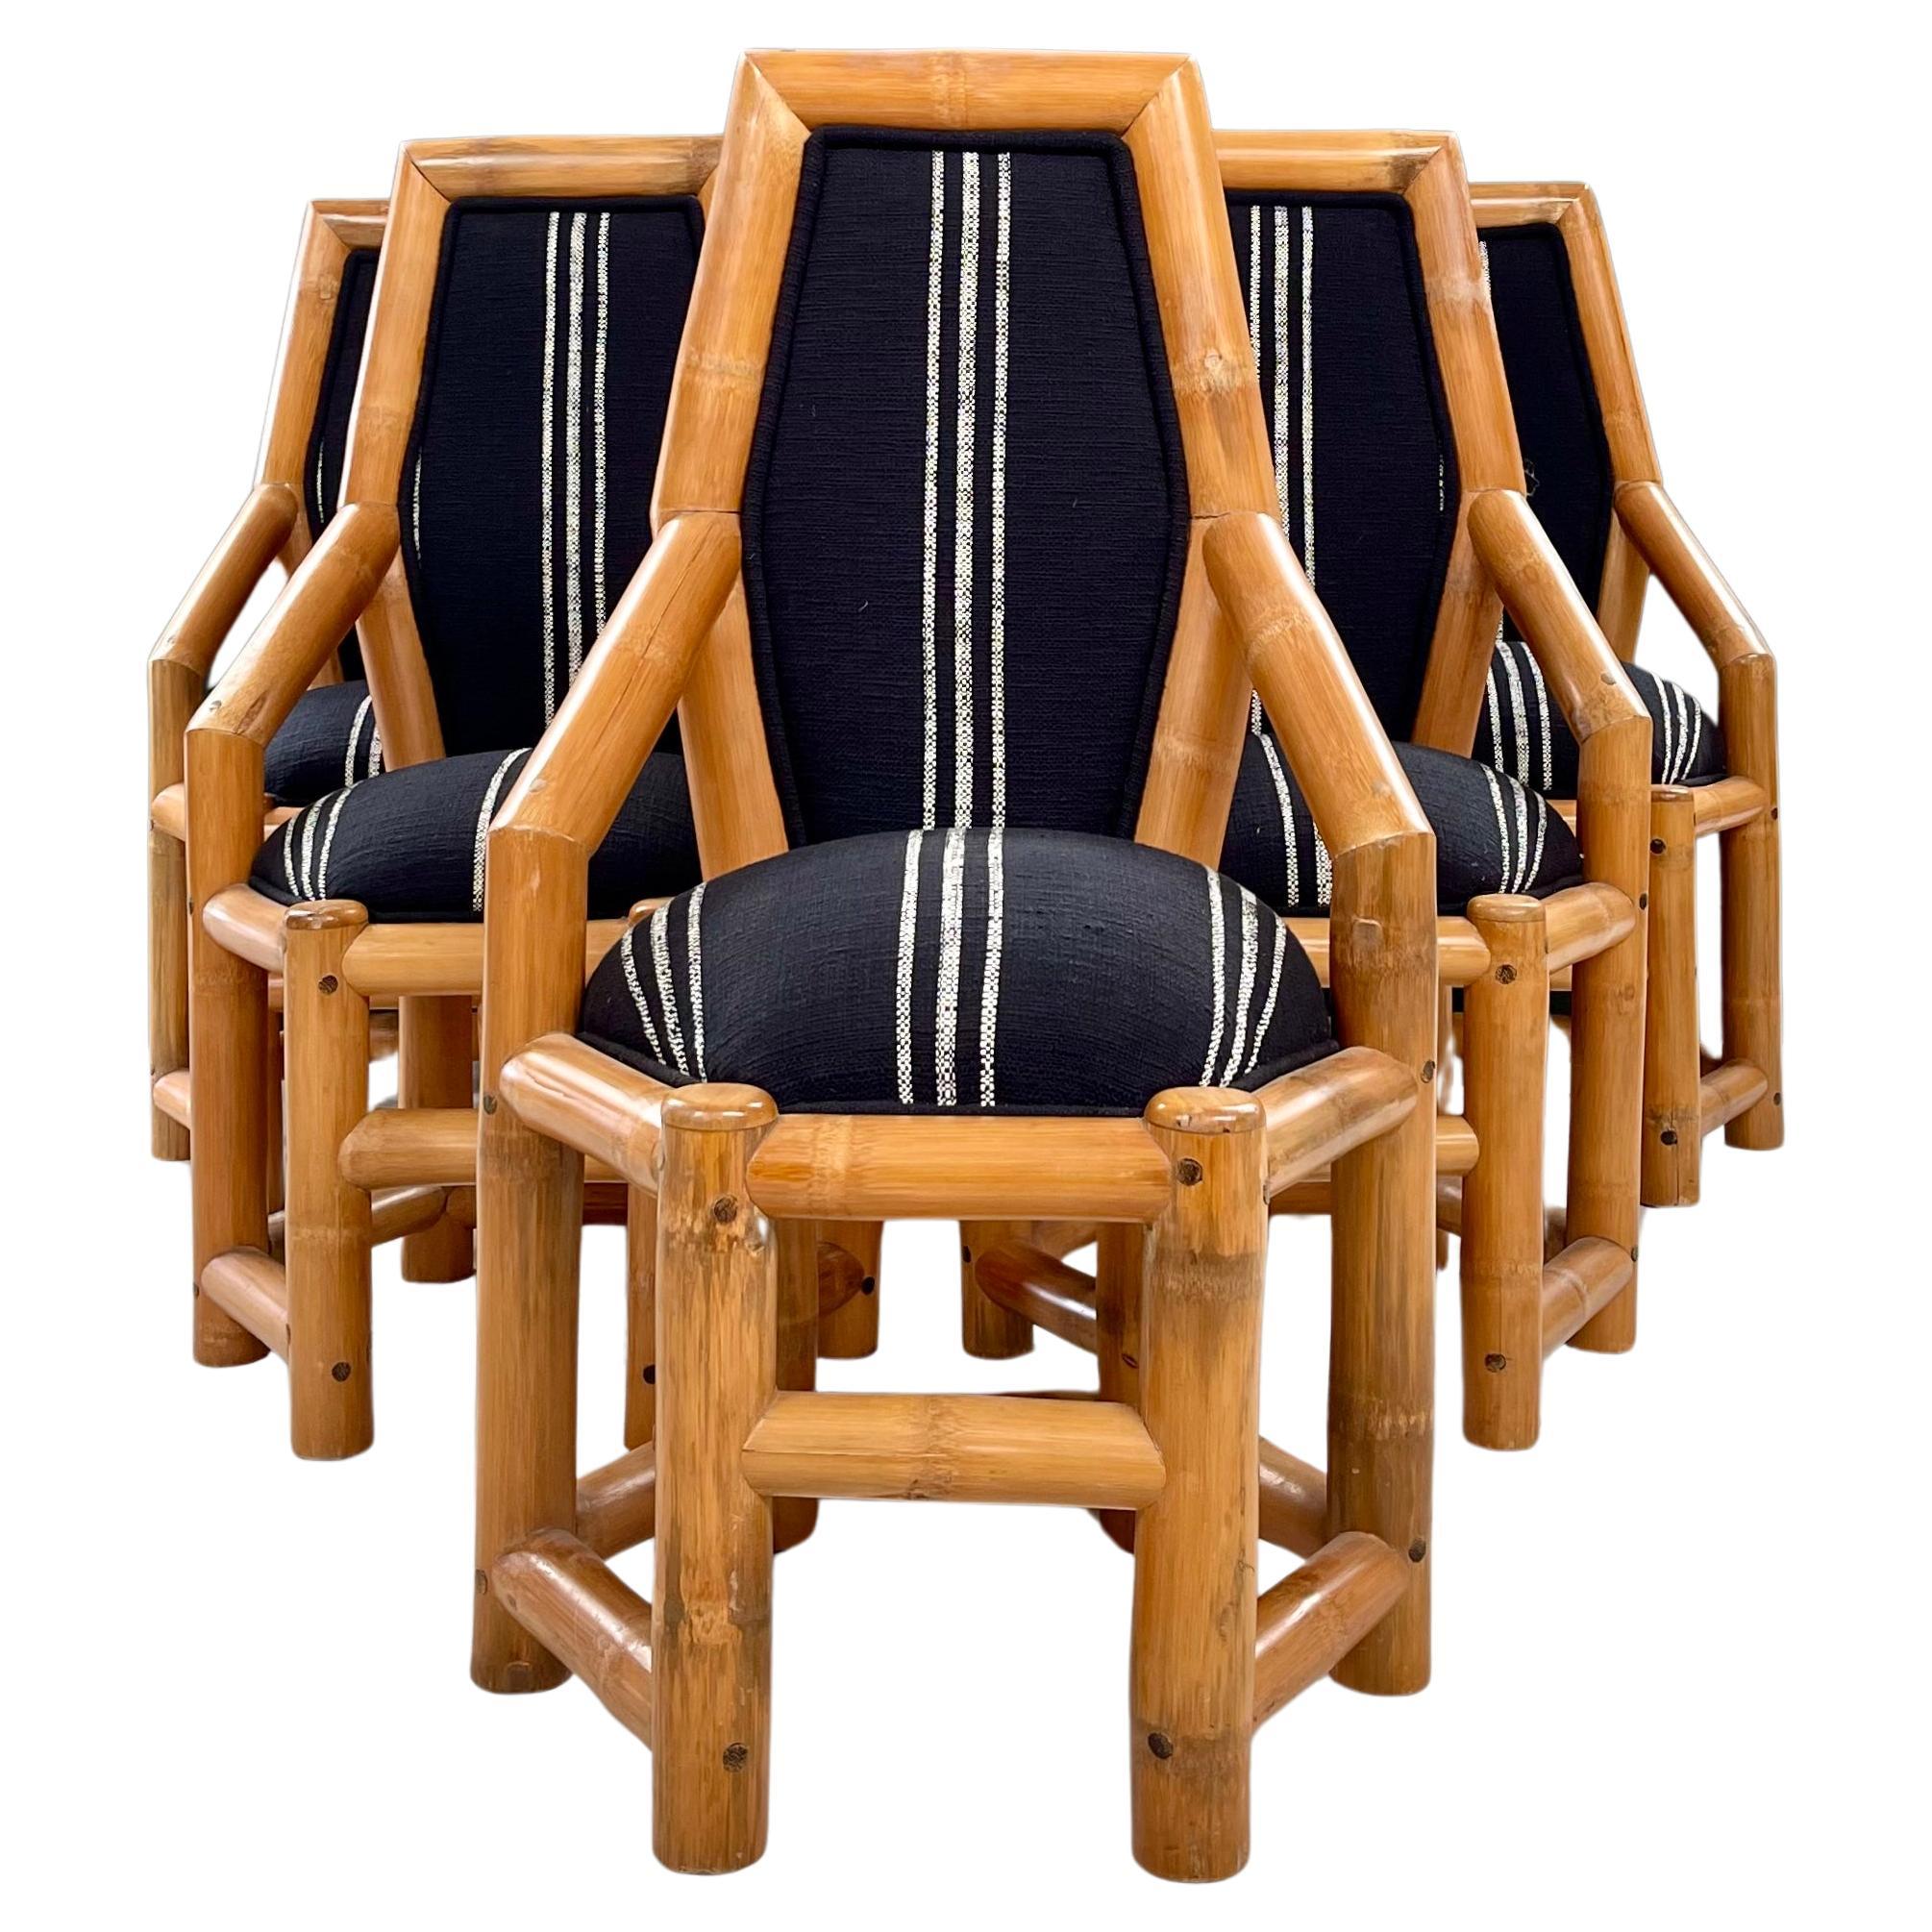 Verwandeln Sie Ihren Raum mit diesen Akzentstühlen aus Bambus, die mit einem schicken schwarz-weiß gestreiften Stoff ausgestattet sind. 6 Stühle mit zeitlosem Charme, die mühelos klassisches Bambushandwerk mit einem modernen Touch verbinden. Die